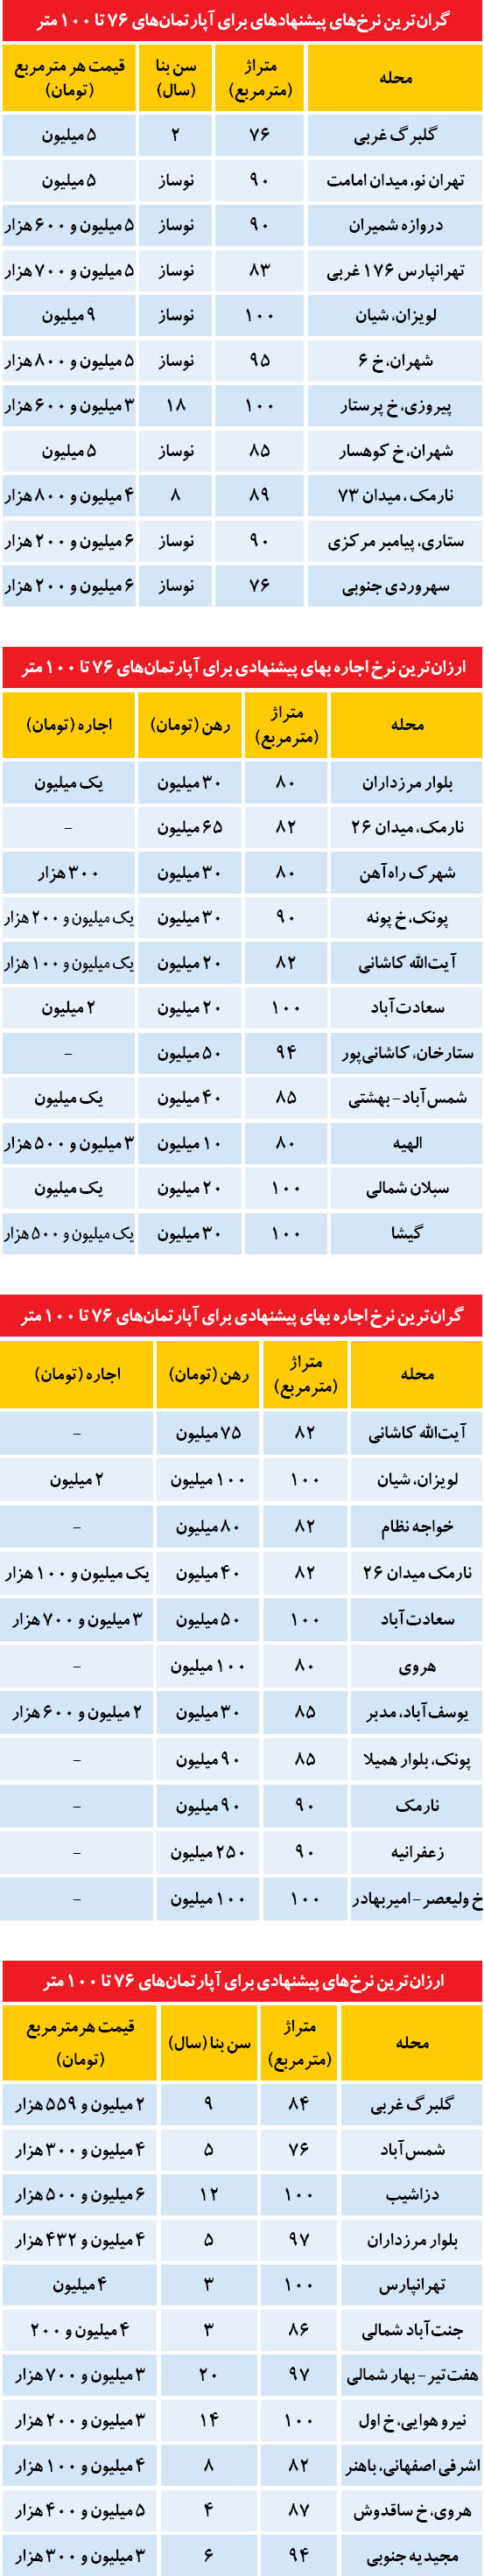 ارزانترین و گرانترین ها در بازار مسکن تهران (جدول)